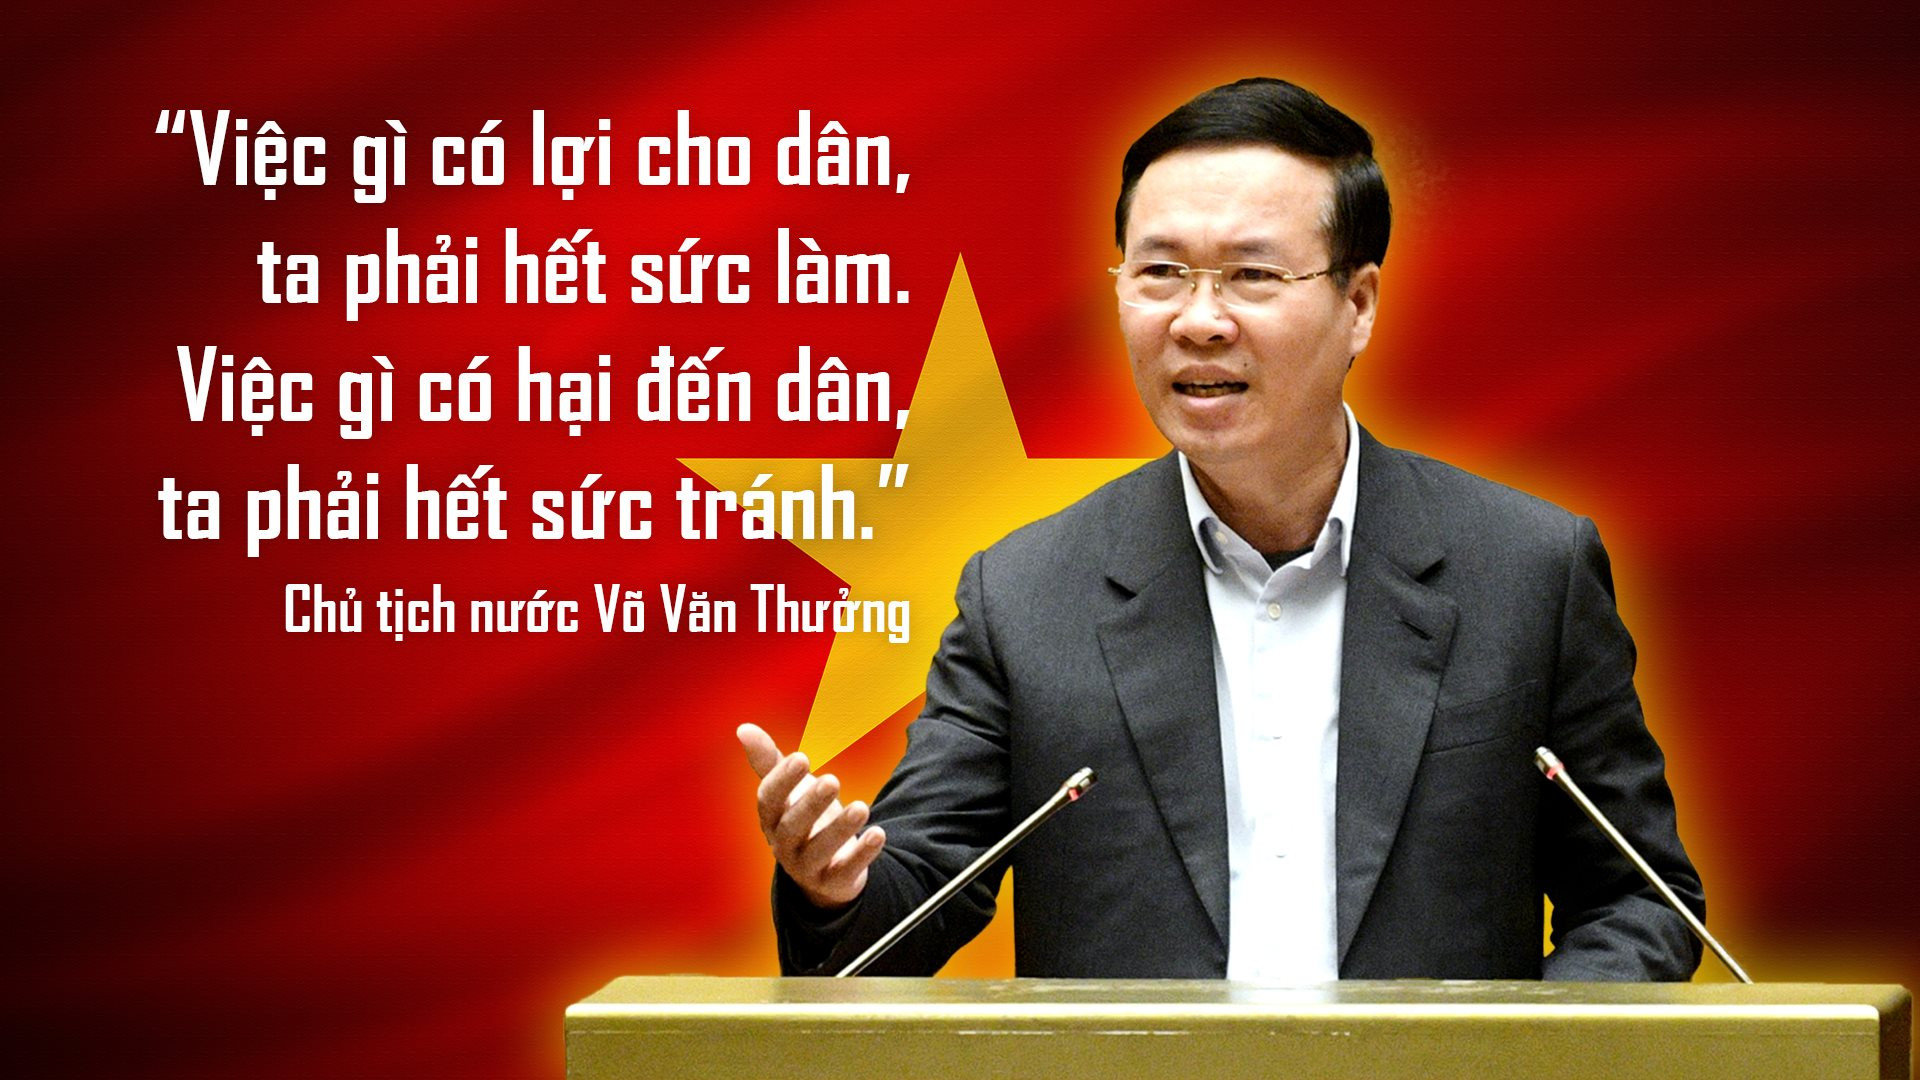 Chân dung ông Võ Văn Thưởng Chủ tịch nước trẻ nhất Việt Nam